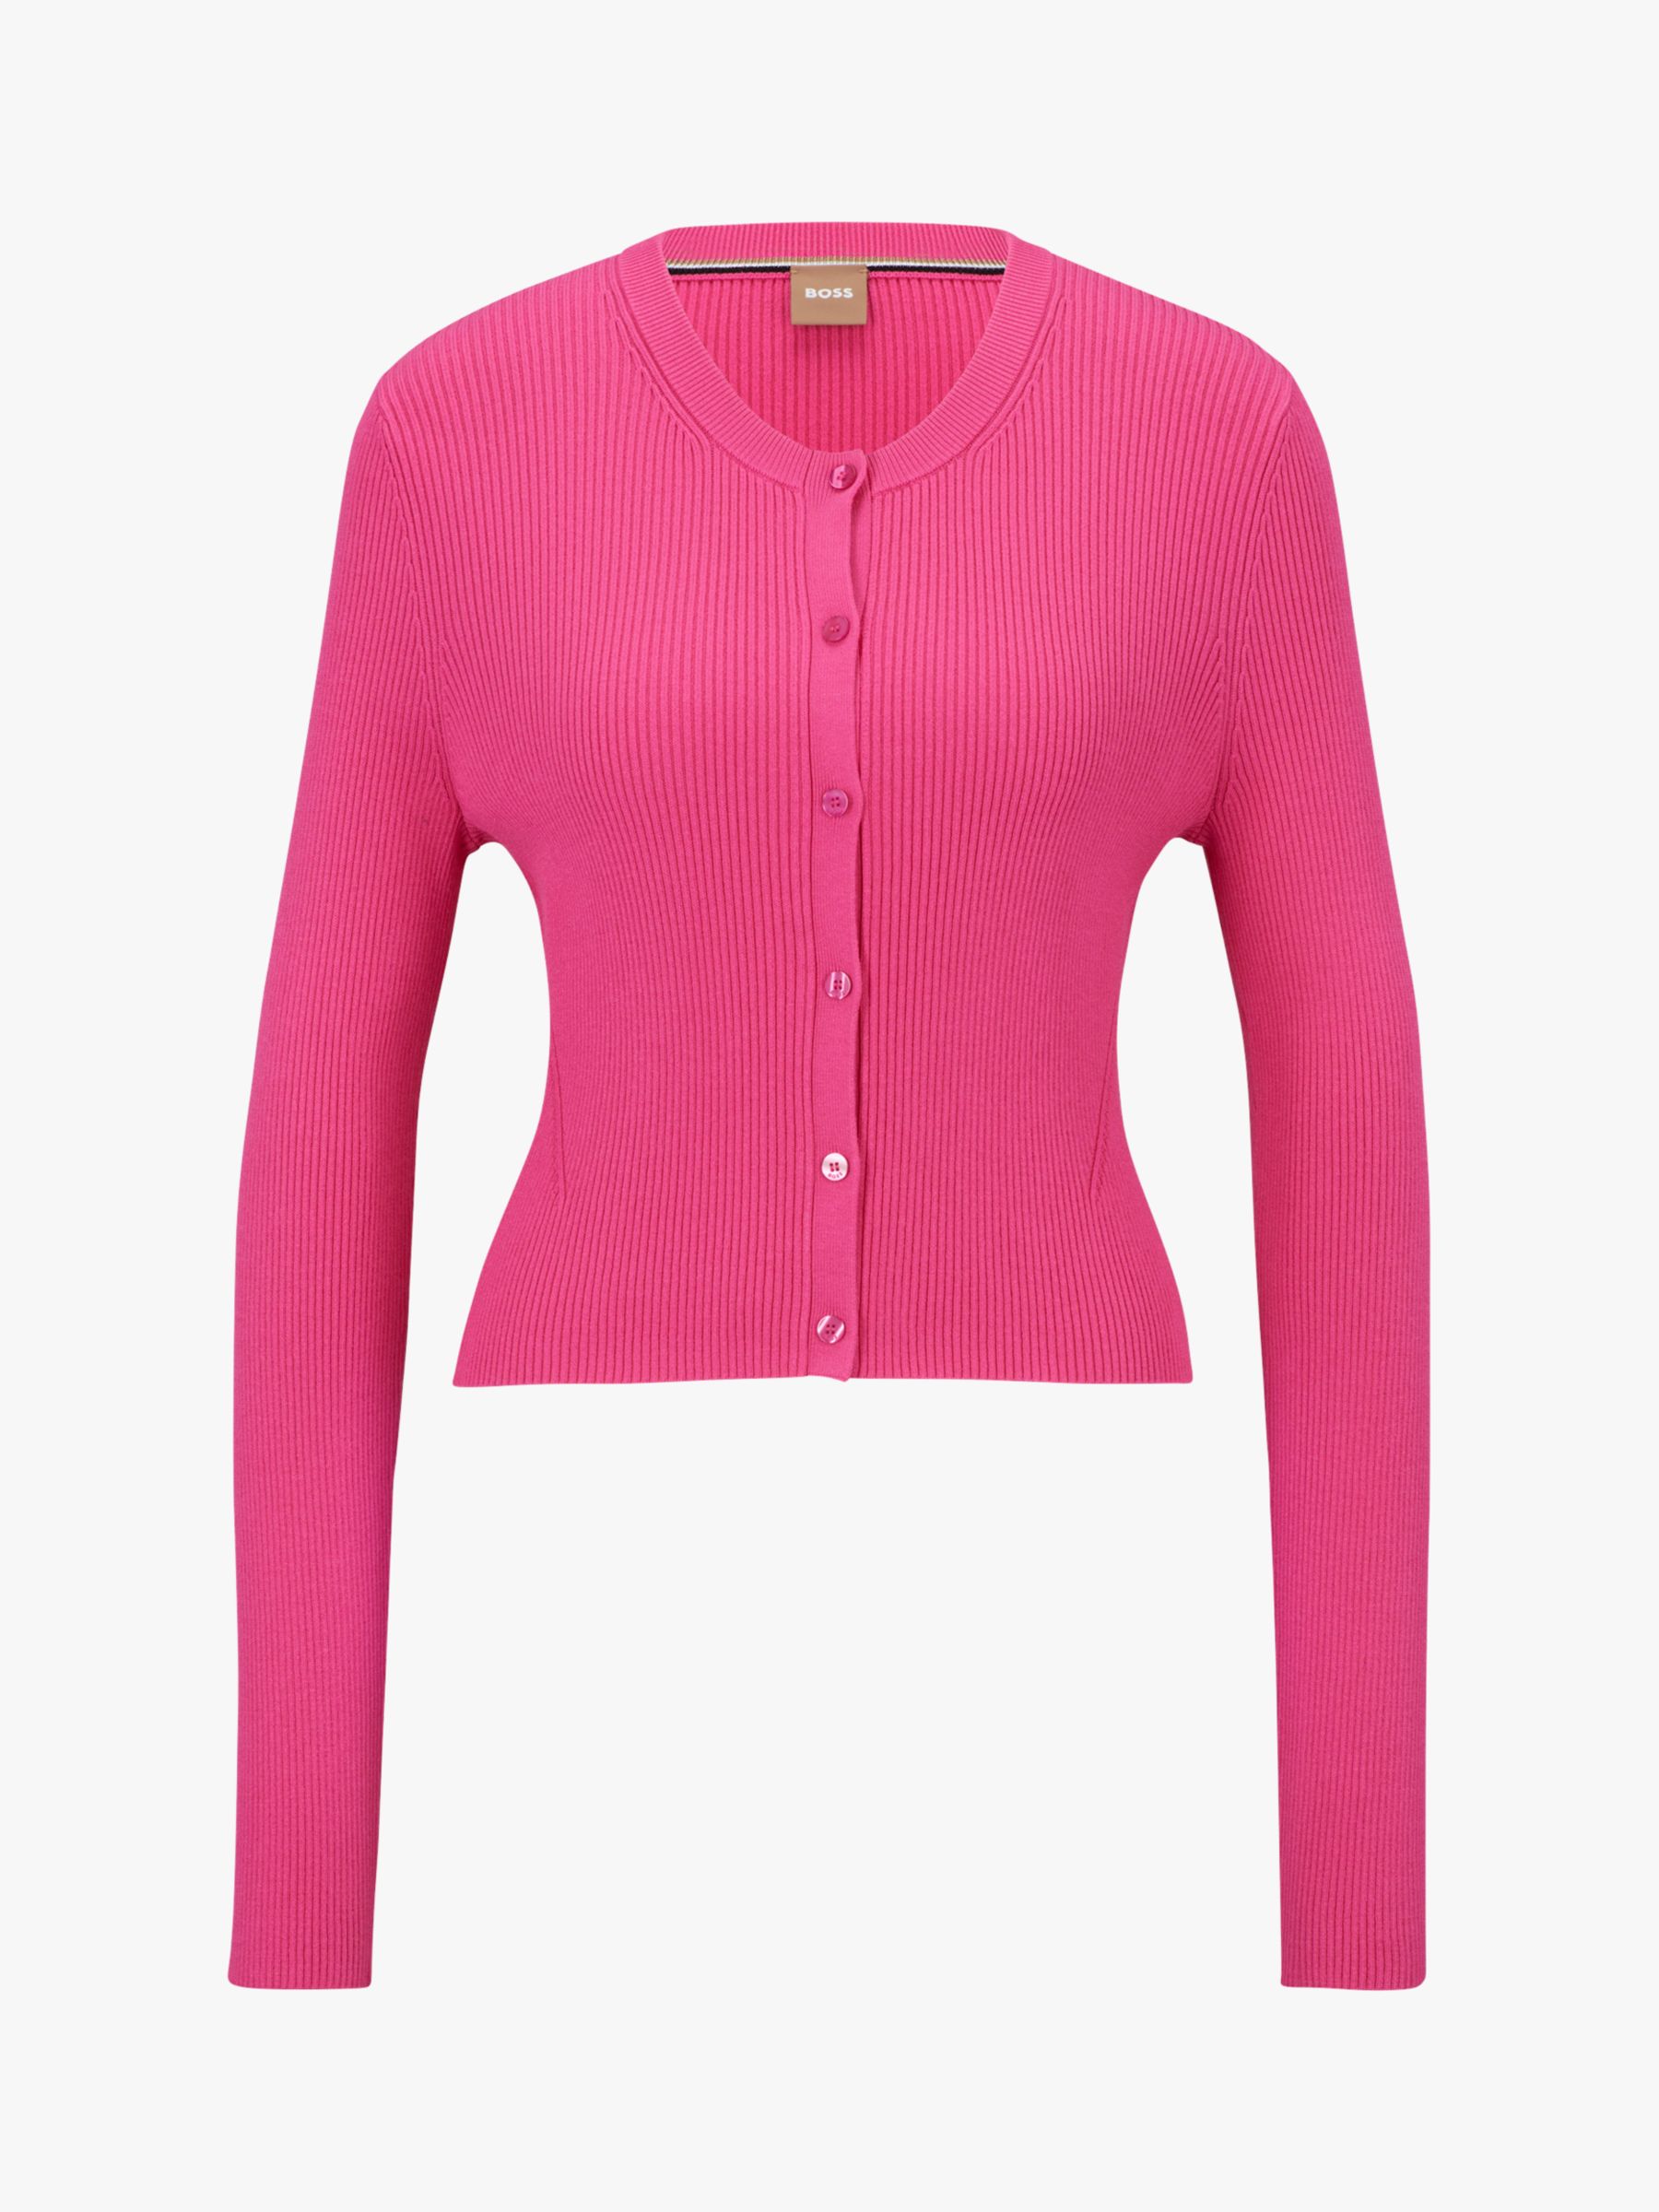 HUGO BOSS Fahara Ribbed Cardigan, Medium Pink, XS